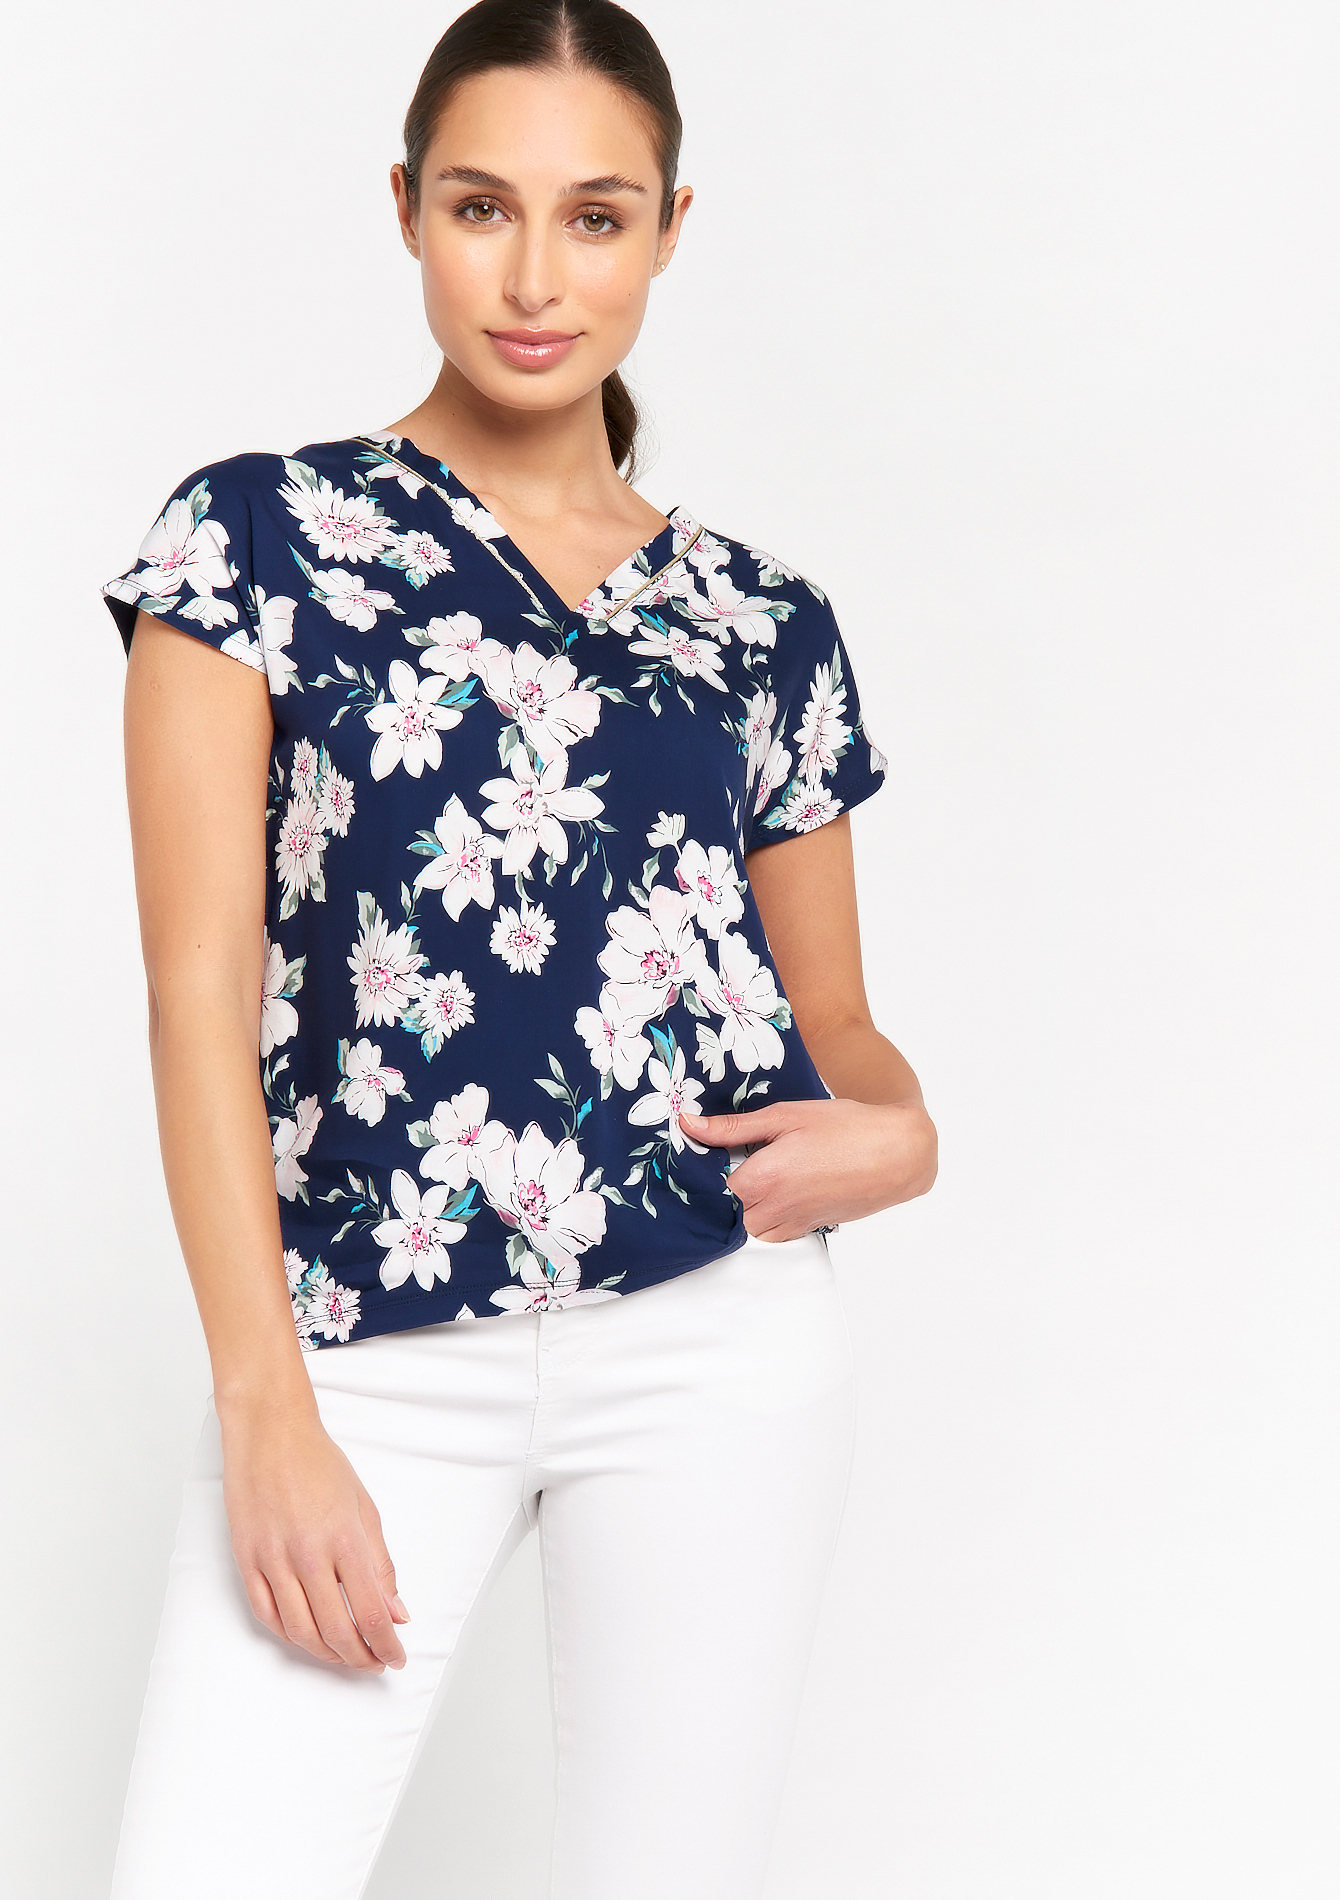 Floral print T-shirt with lurex trim - NAVY MARINE - 02300882_1650